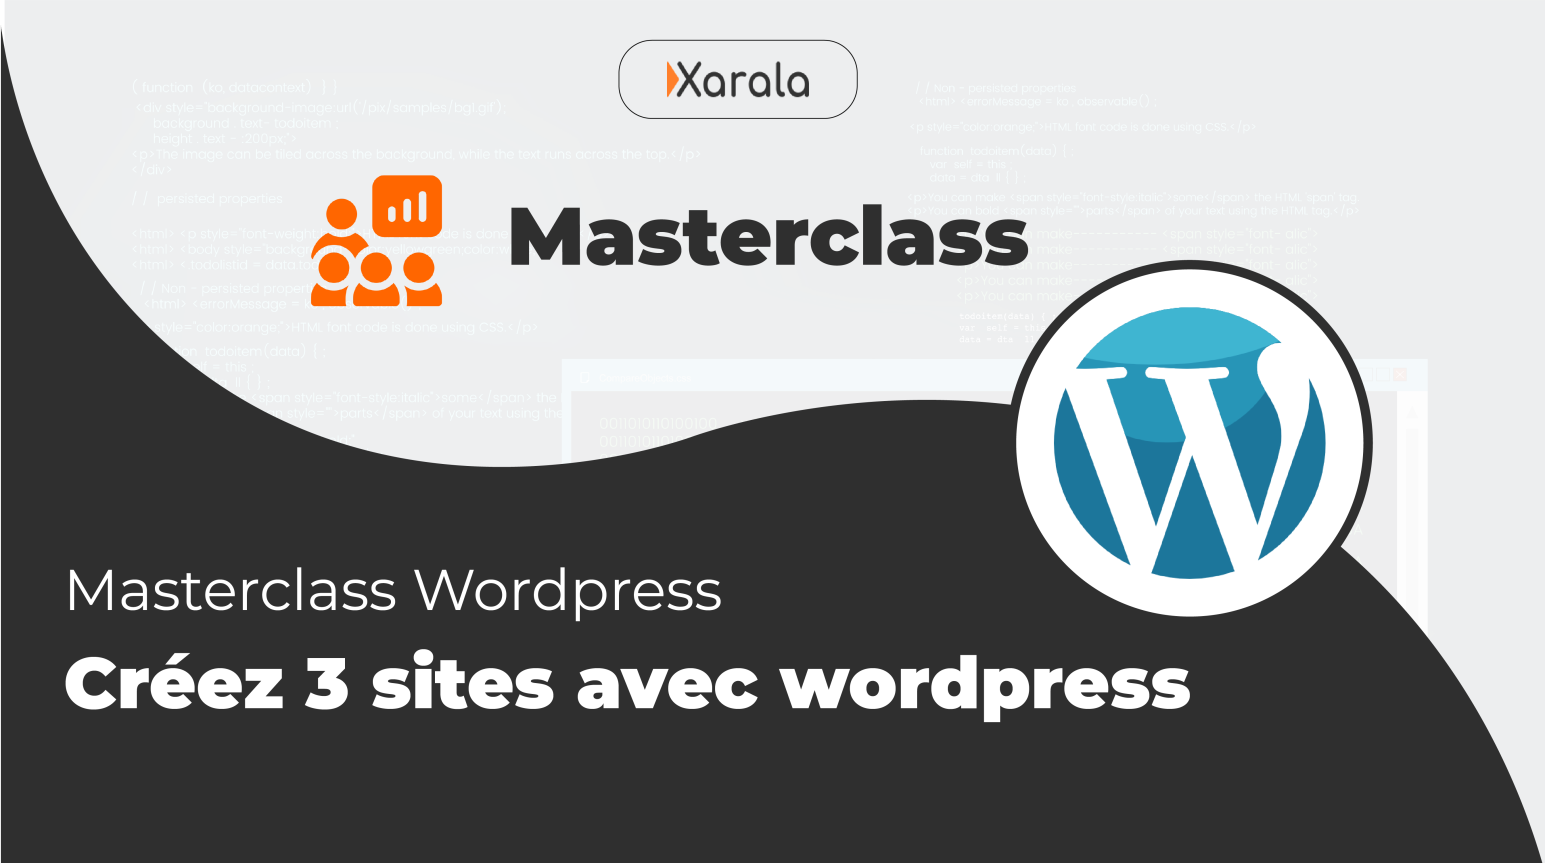 Masterclass Wordpress: Créez 3 sites web avec Wordpress